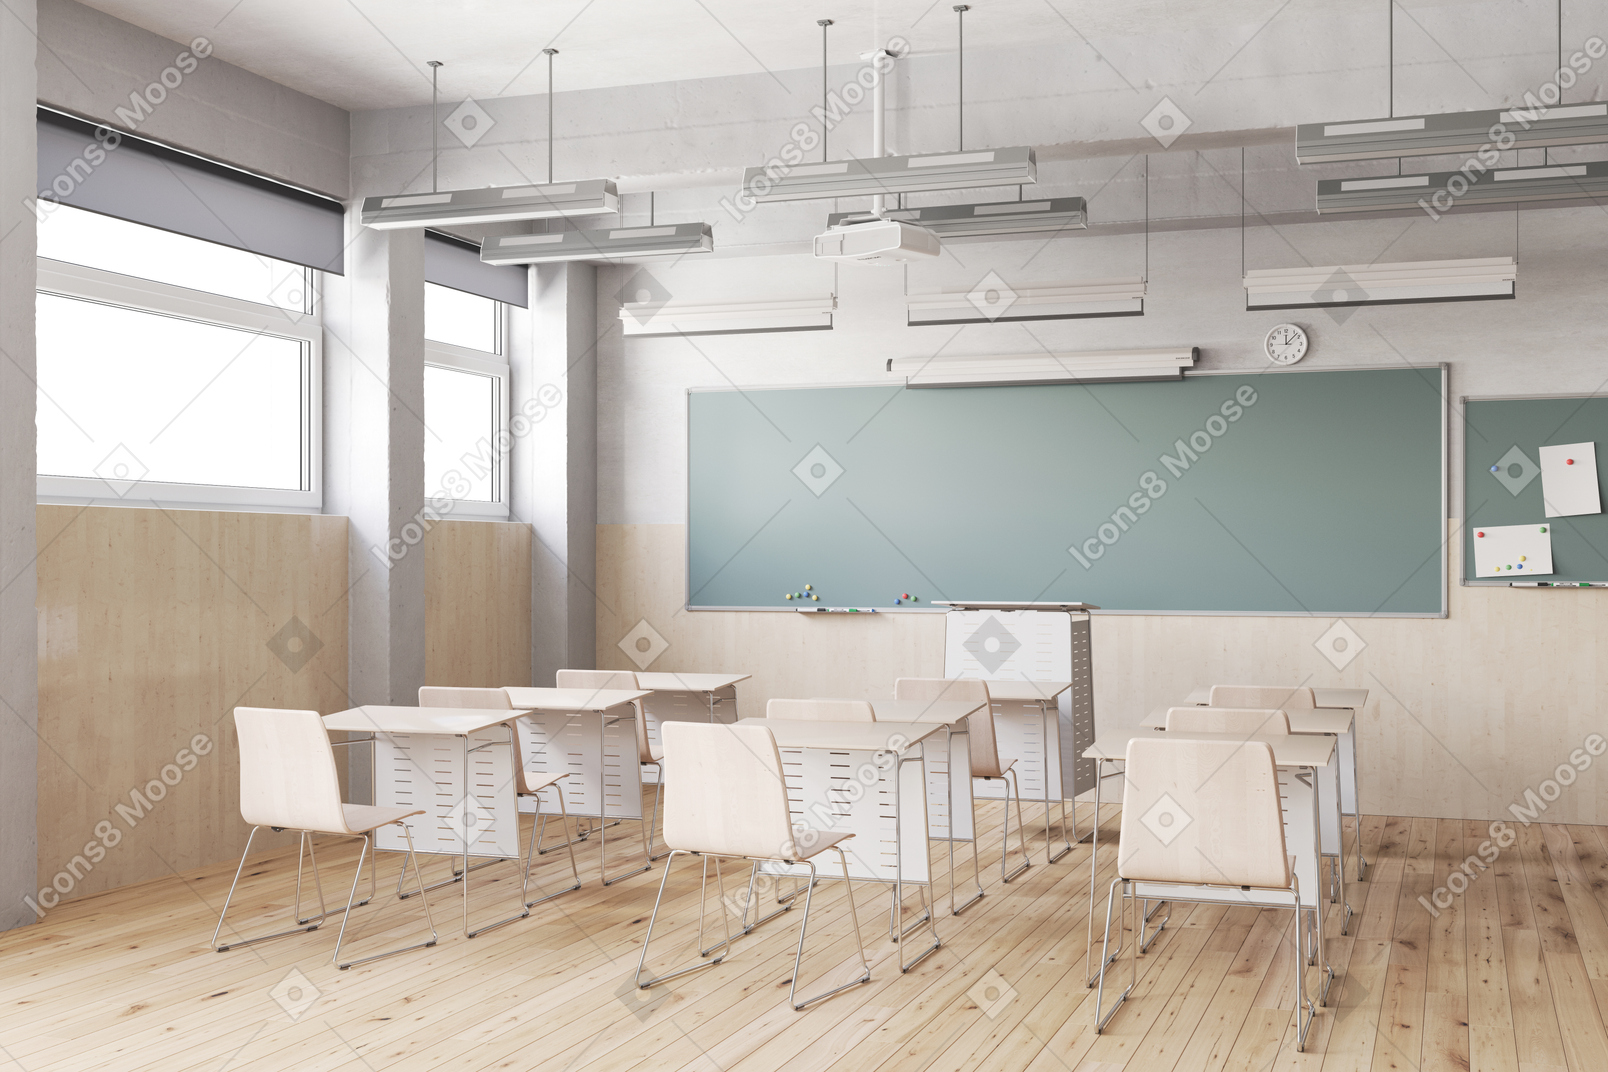 有书桌、椅子和黑板的教室